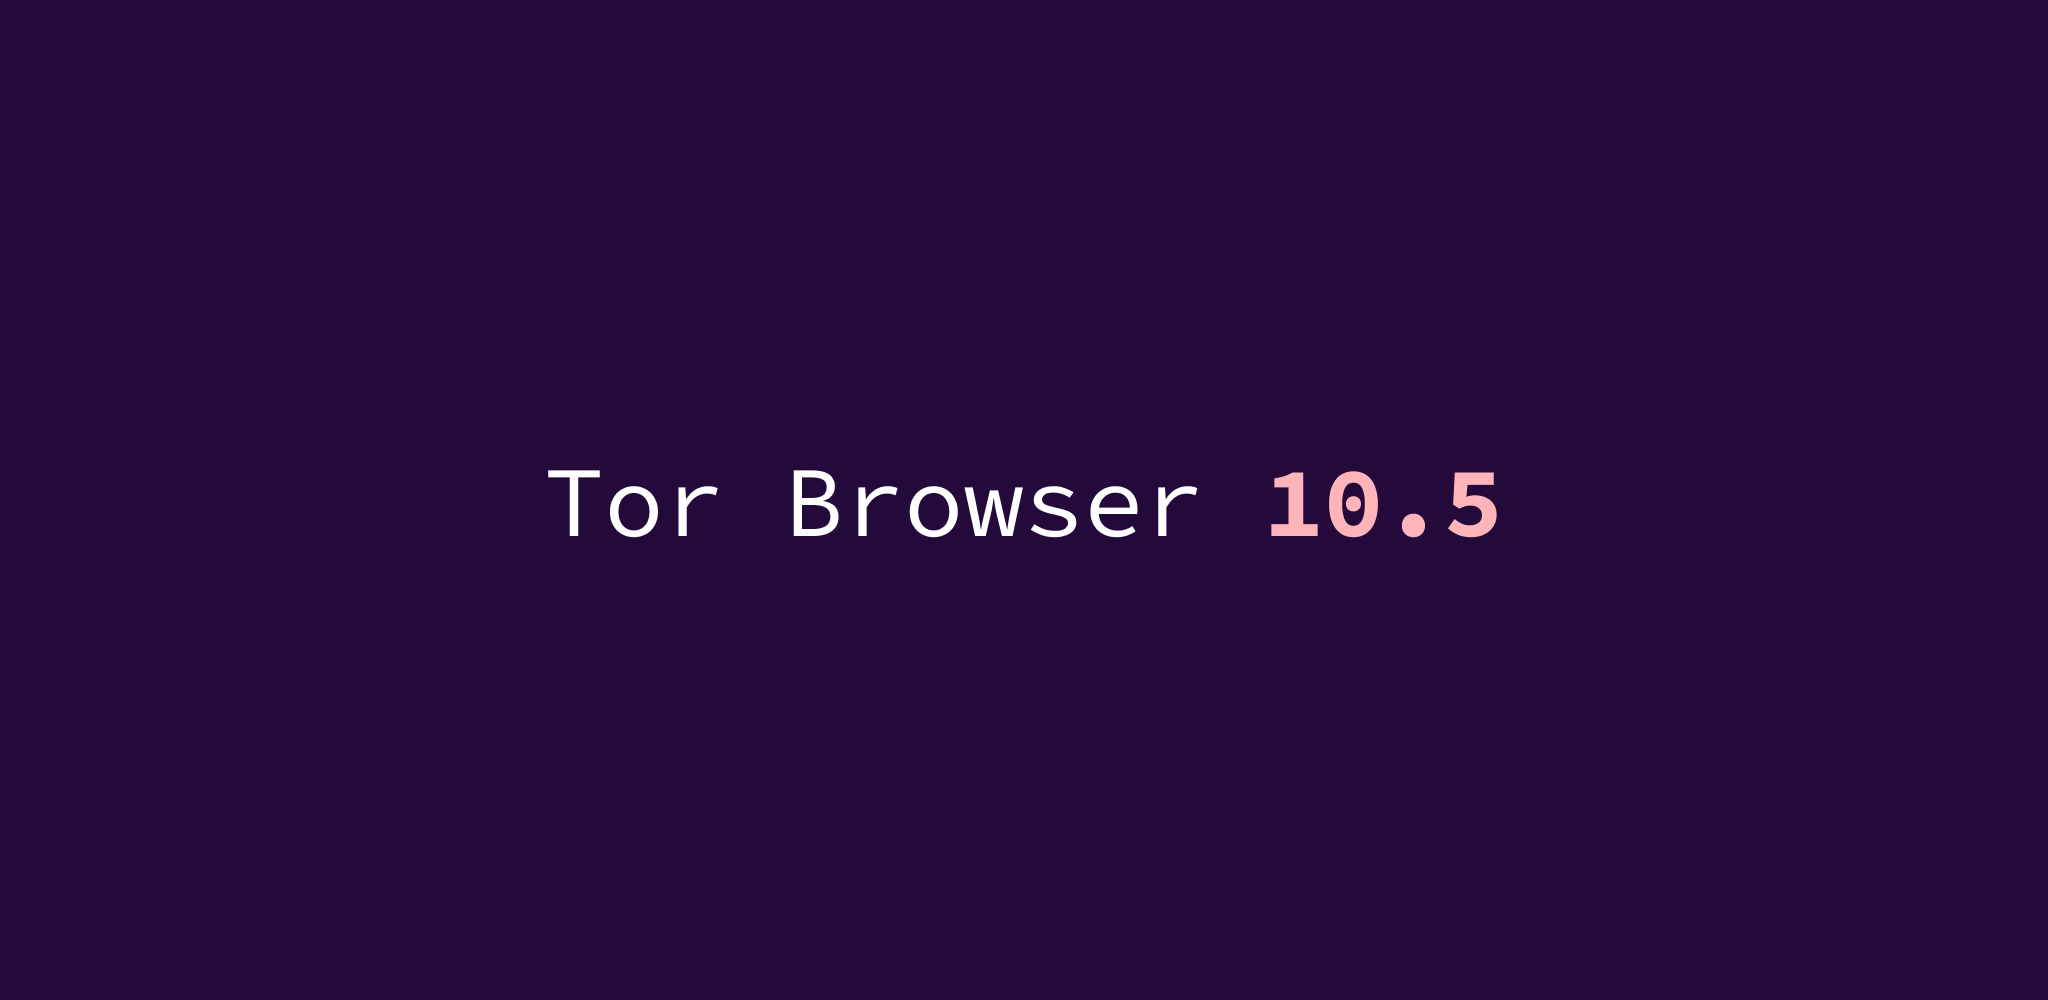 Tor browser 64 скачать торрент hyrda браузер тор луковица скачать бесплатно hydra